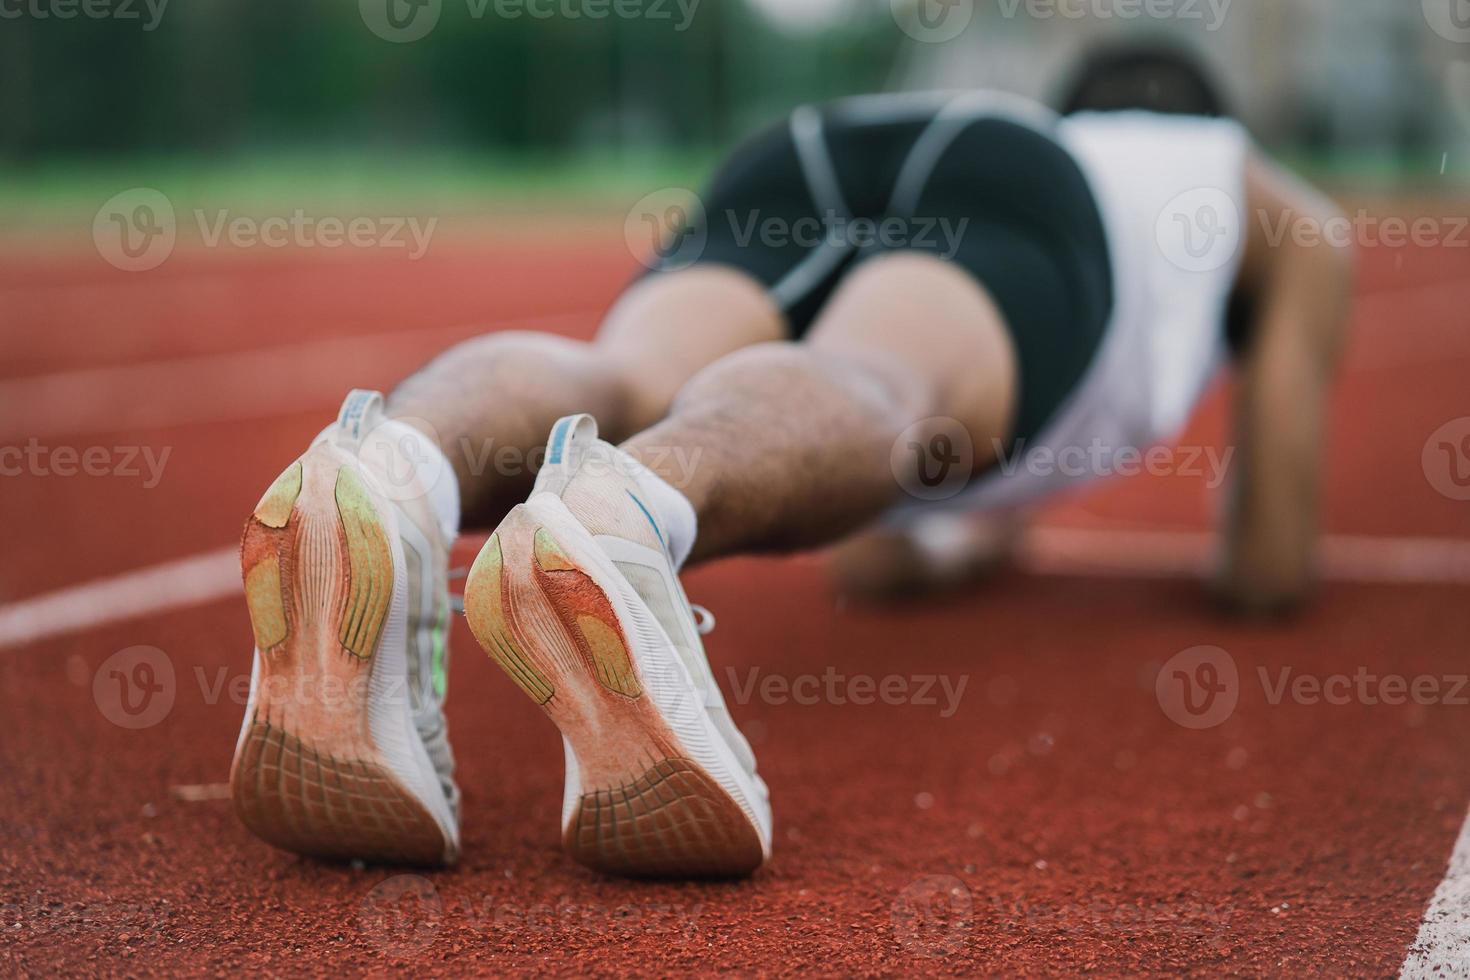 atletas deportistas corredores que visten ropa deportiva blanca para estirar y calentar antes de practicar en una pista de atletismo en un estadio. concepto de deporte de corredor. foto